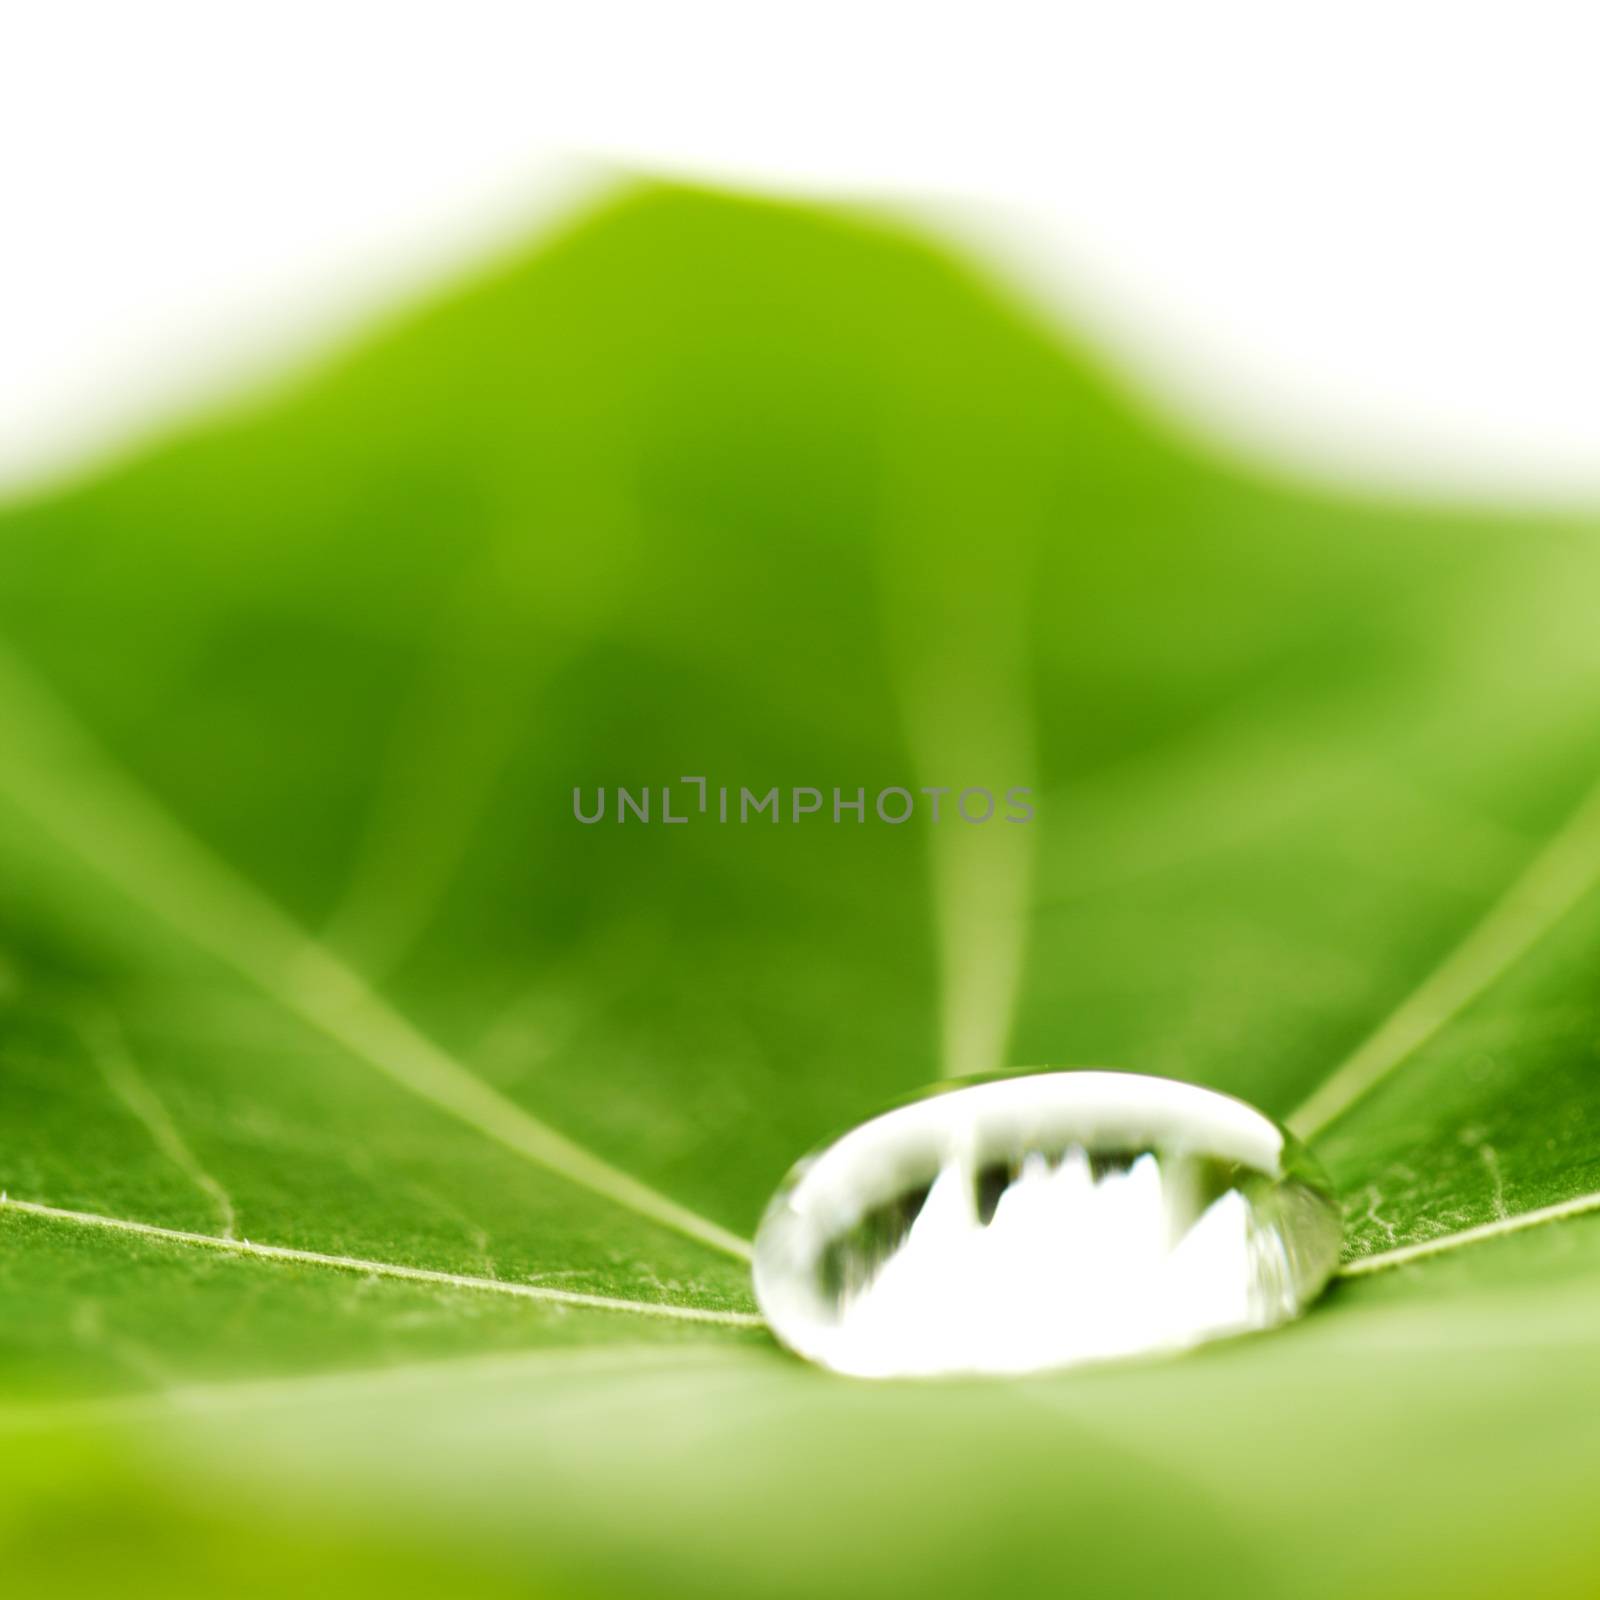 Water drop on green Nasturtium leaf macro